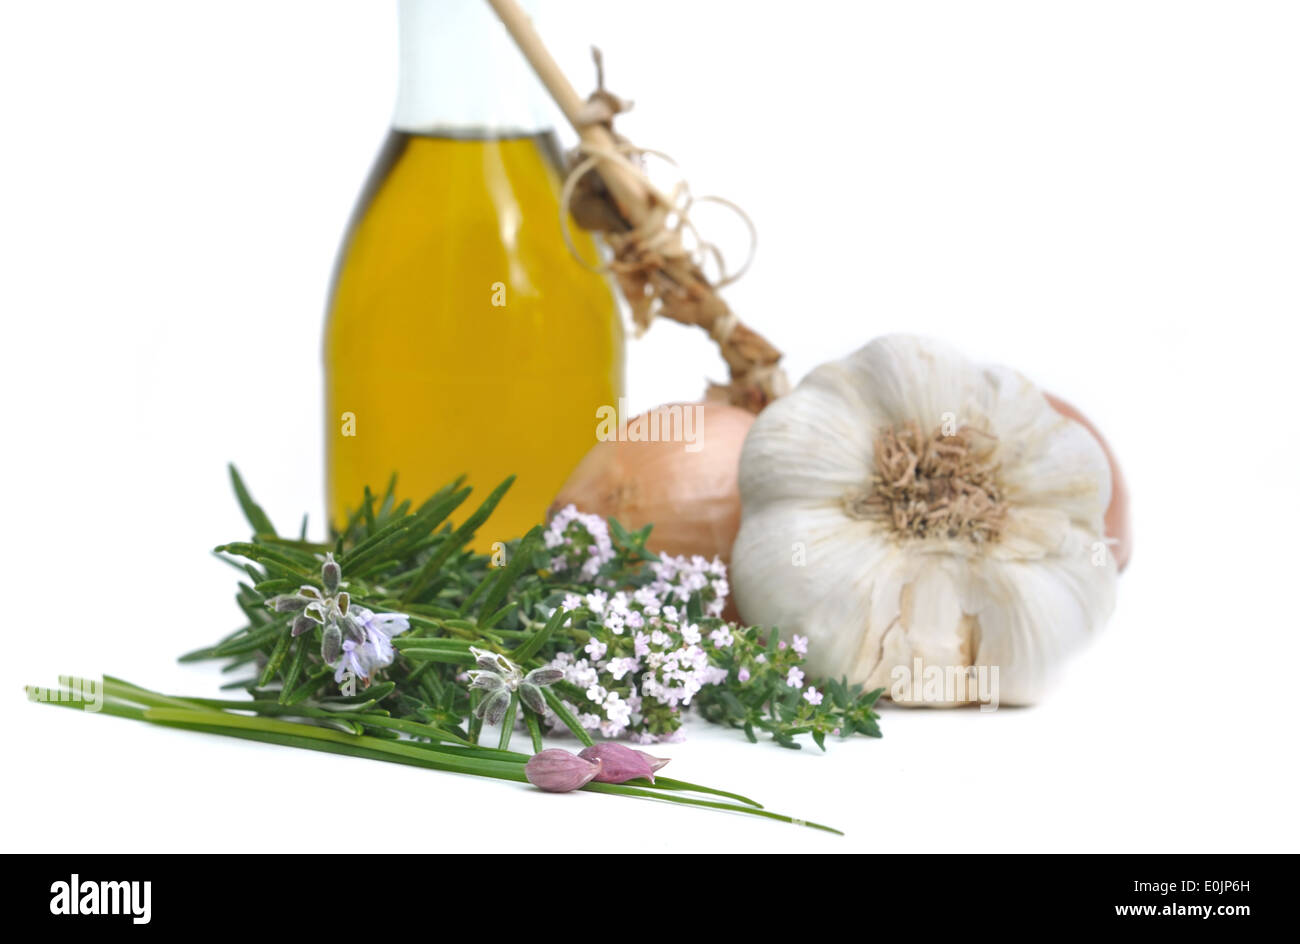 Hierbas aromáticas, cebollas, ajo y aceite para sazonar la botella Foto de stock